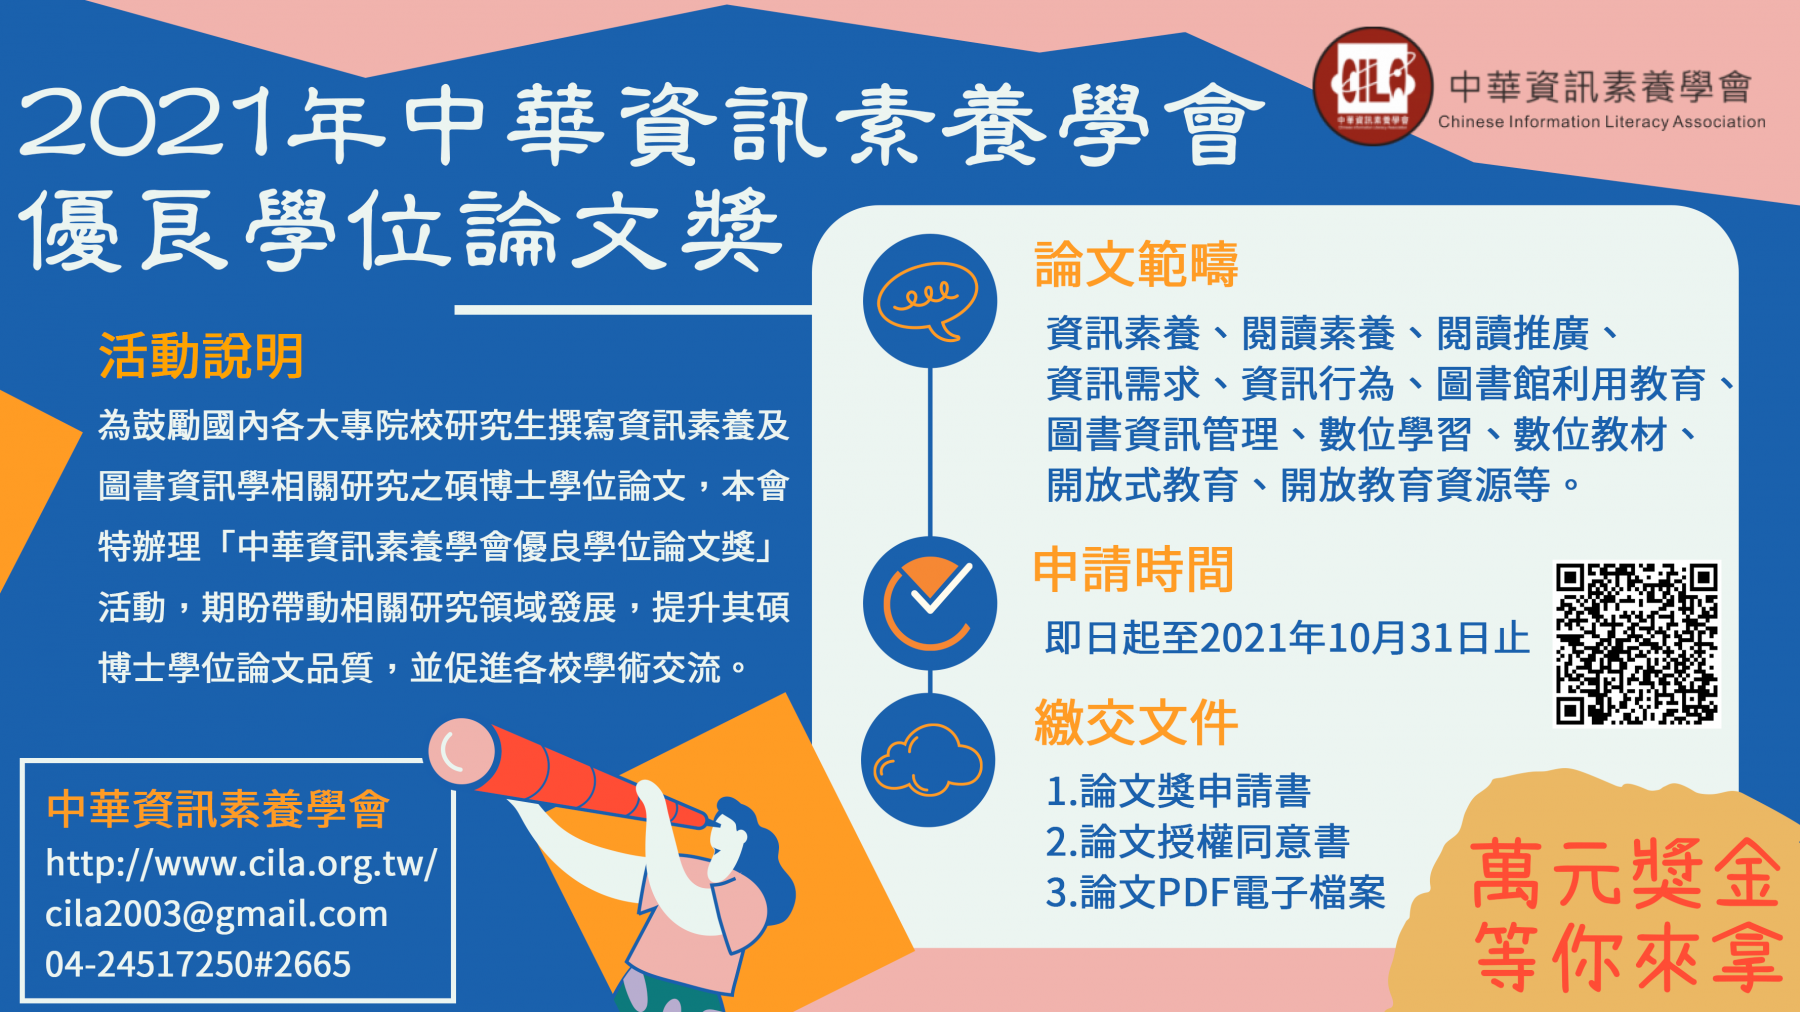 2021年中華資訊素養學會優良論文獎